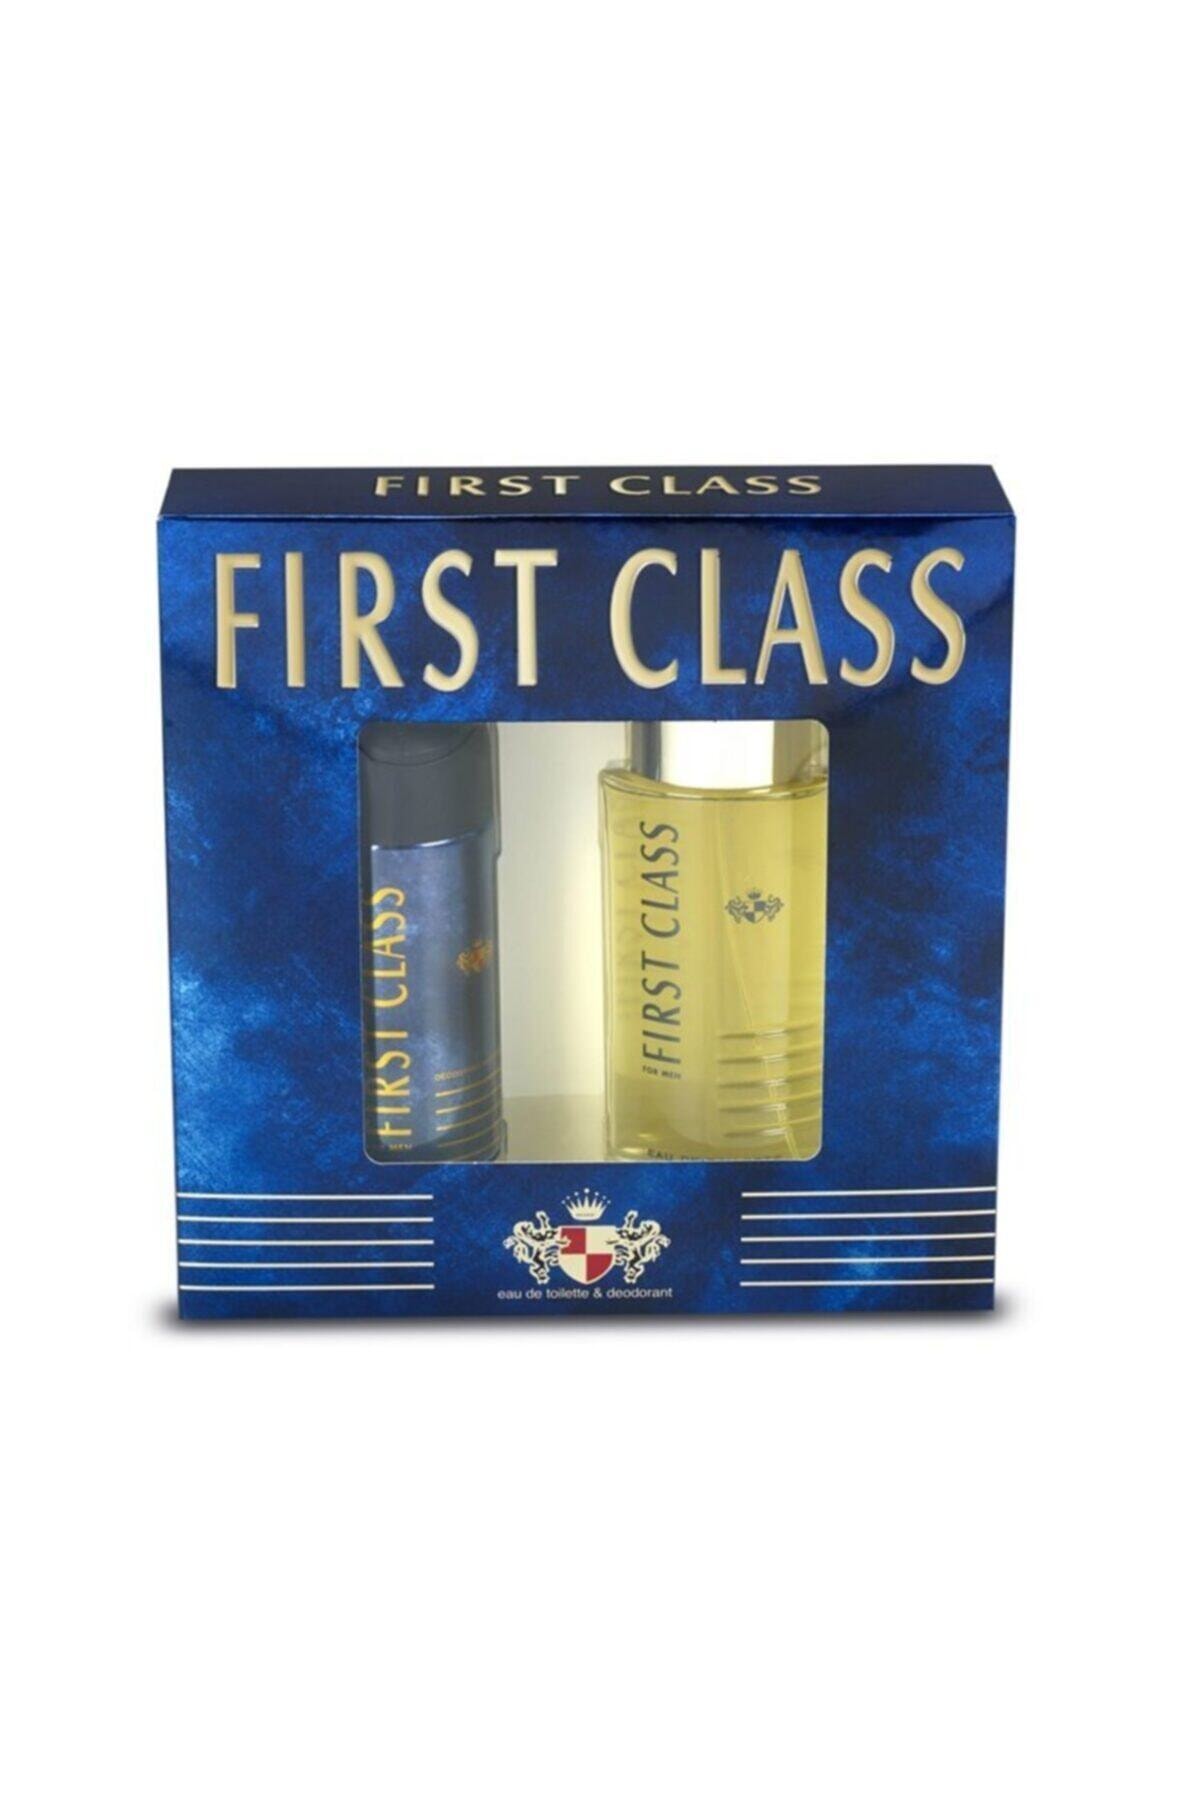 First Class Fırst Class Edt 100ml+deo 150ml Parfüm Set Karton